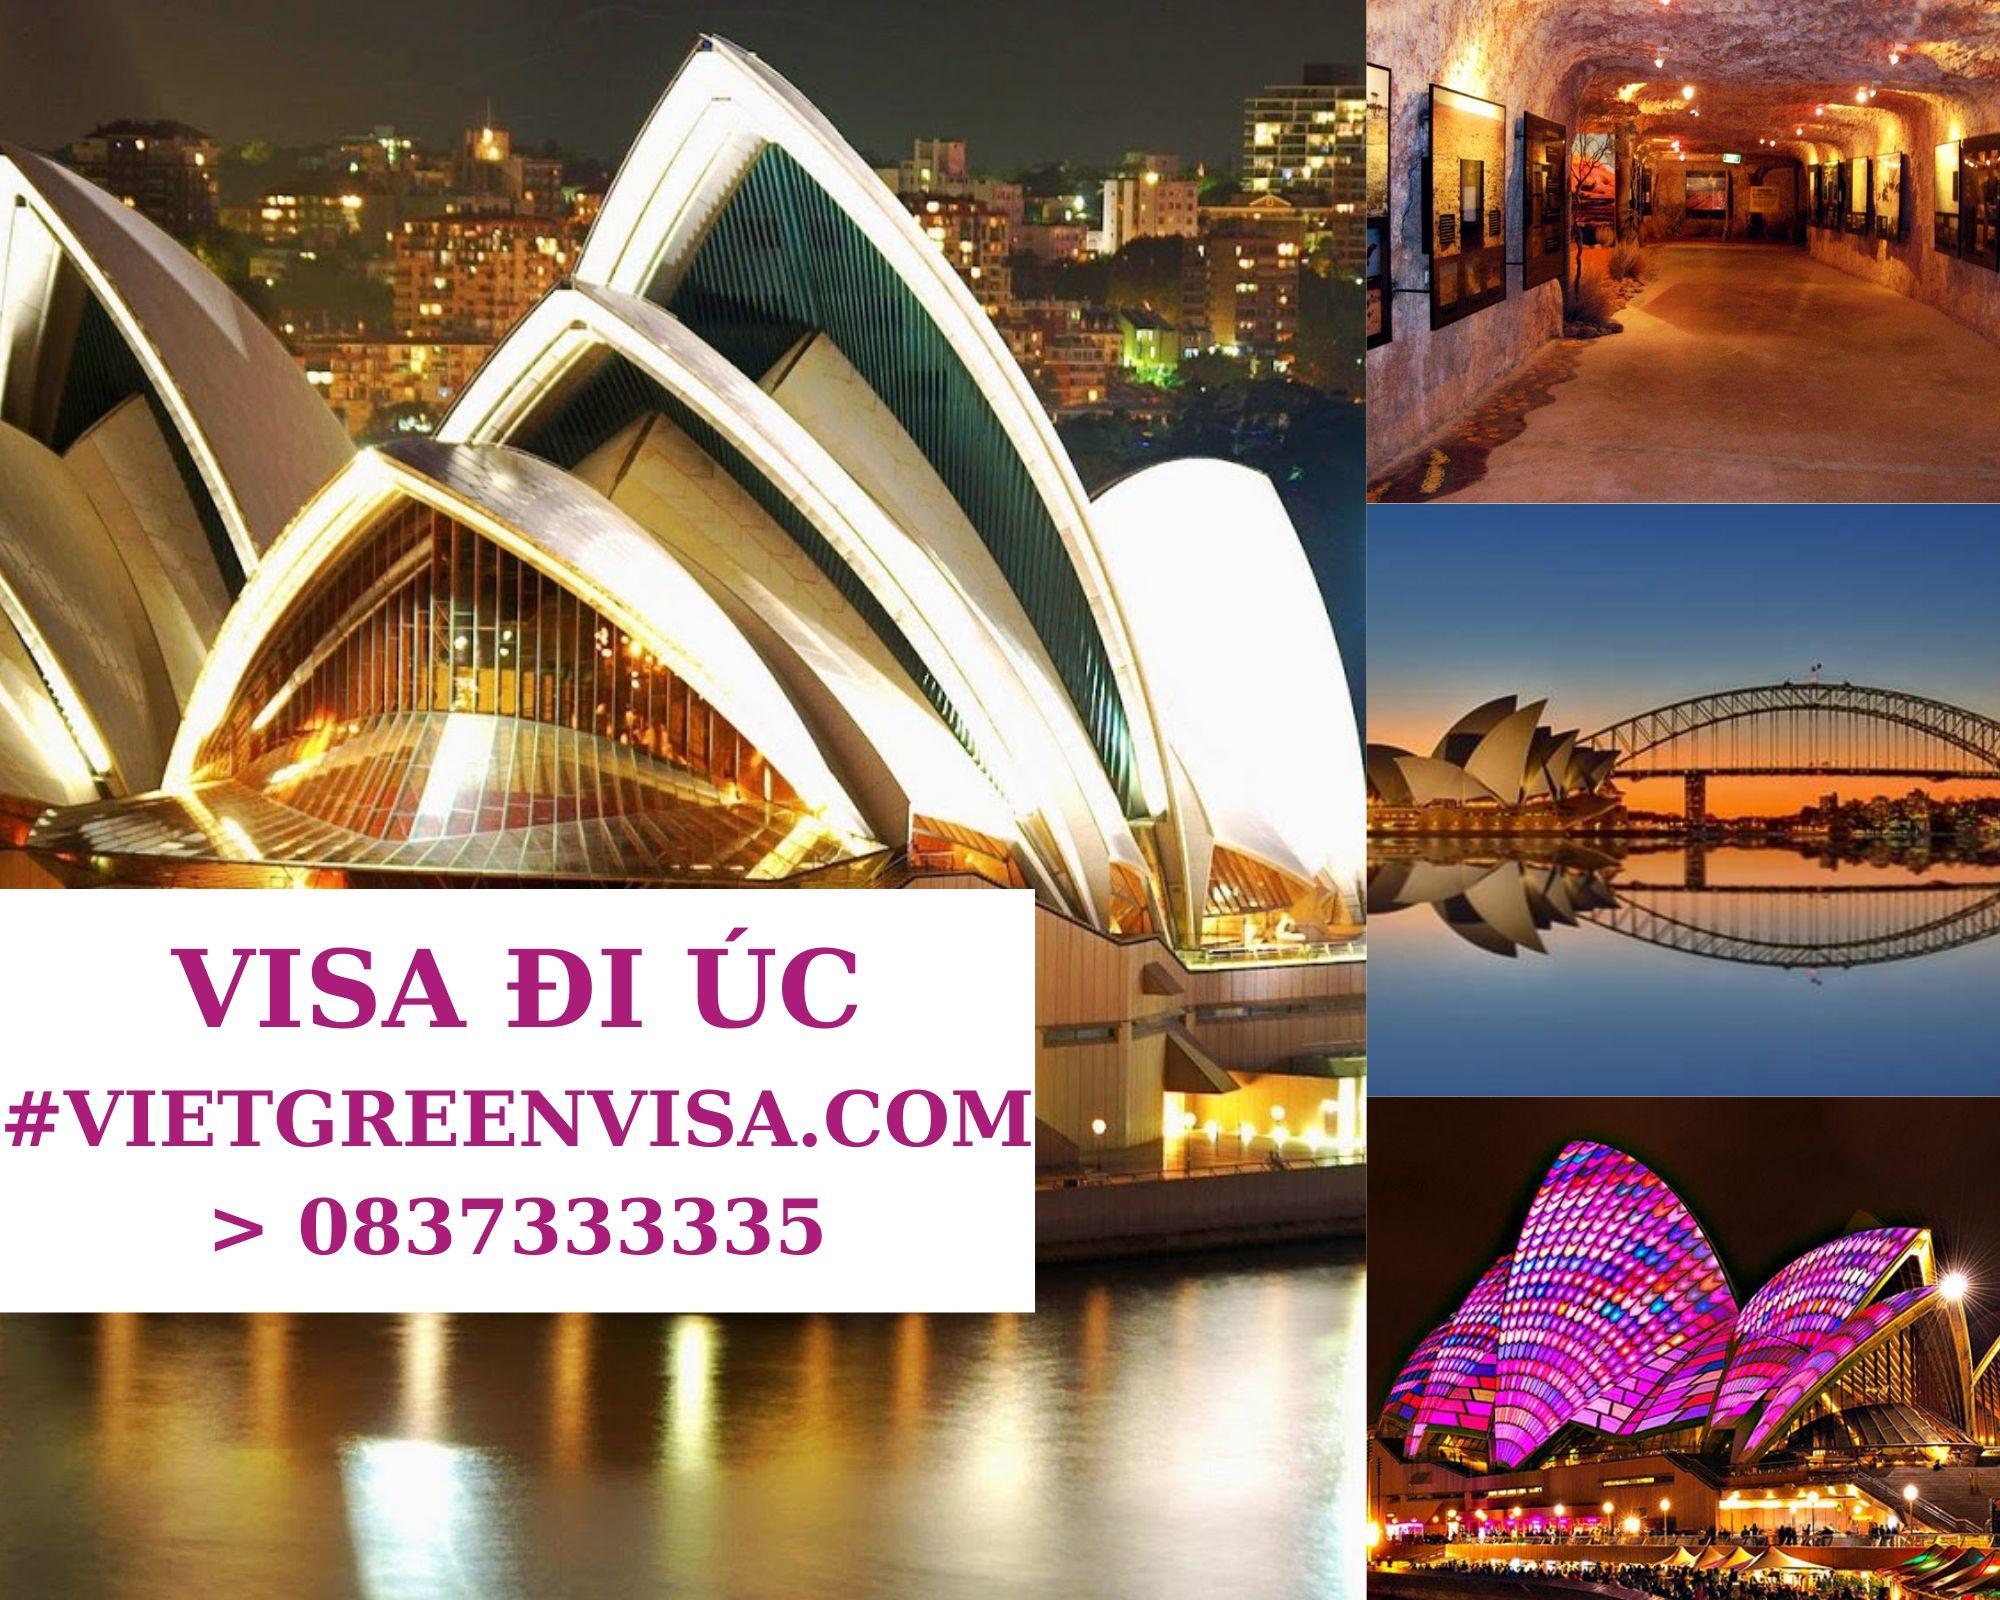 Dịch vụ Visa Úc trọn gói tại Hà Nội, Hồ Chí Minh